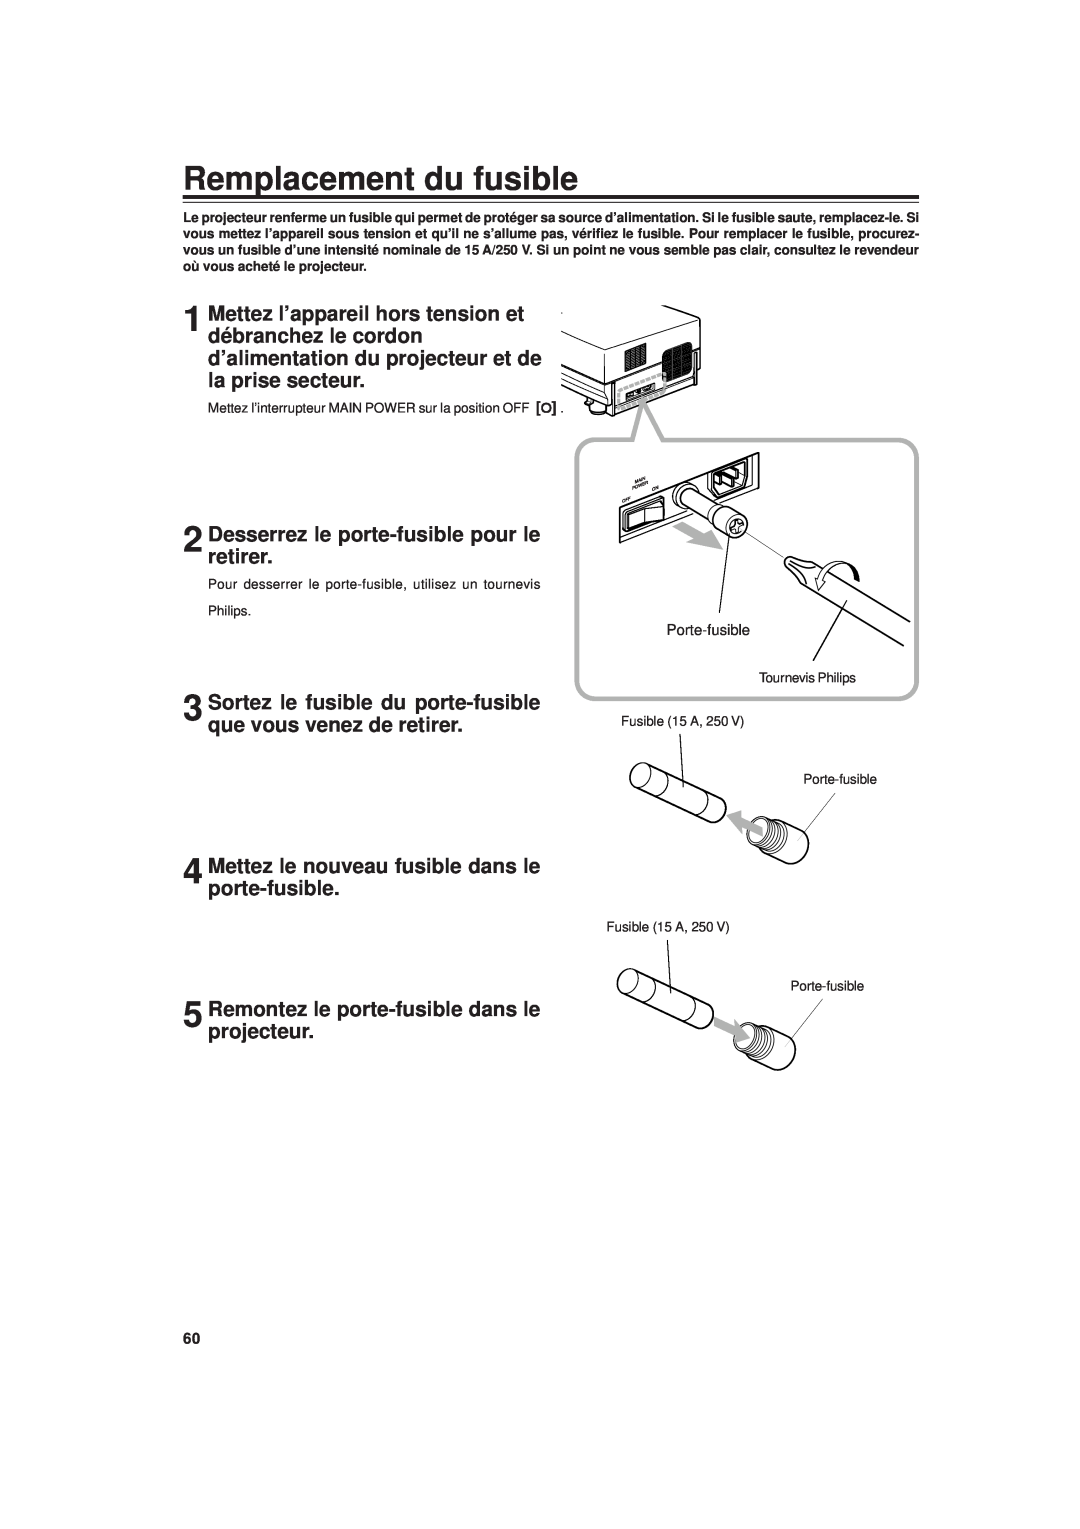 JVC DLA-G20U manual Remplacement du fusible, Sortez le fusible du porte-fusible que vous venez de retirer 